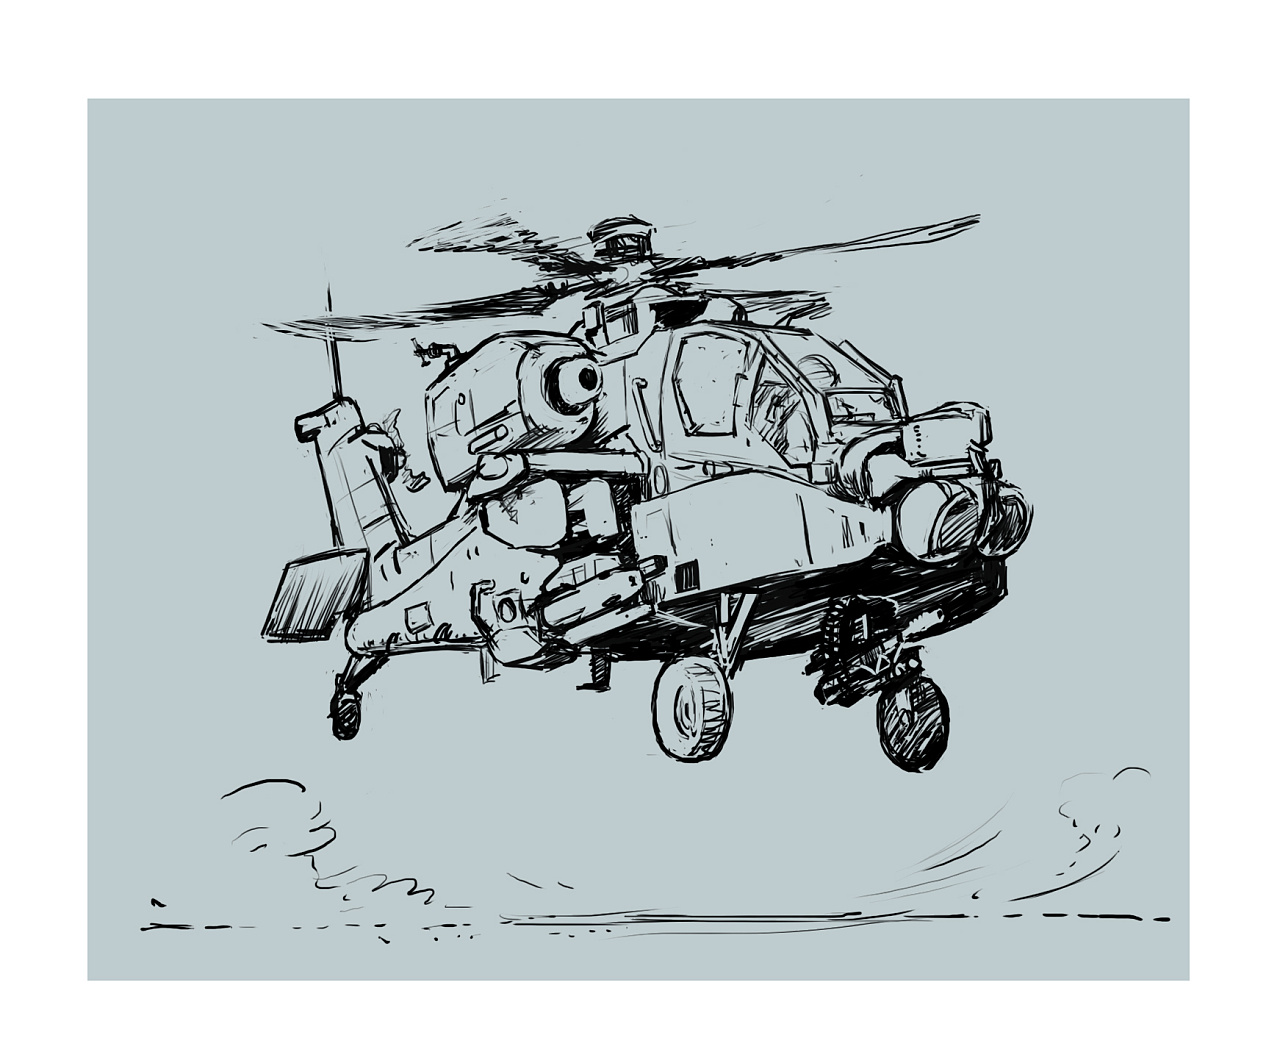 素描直升机怎么画图片